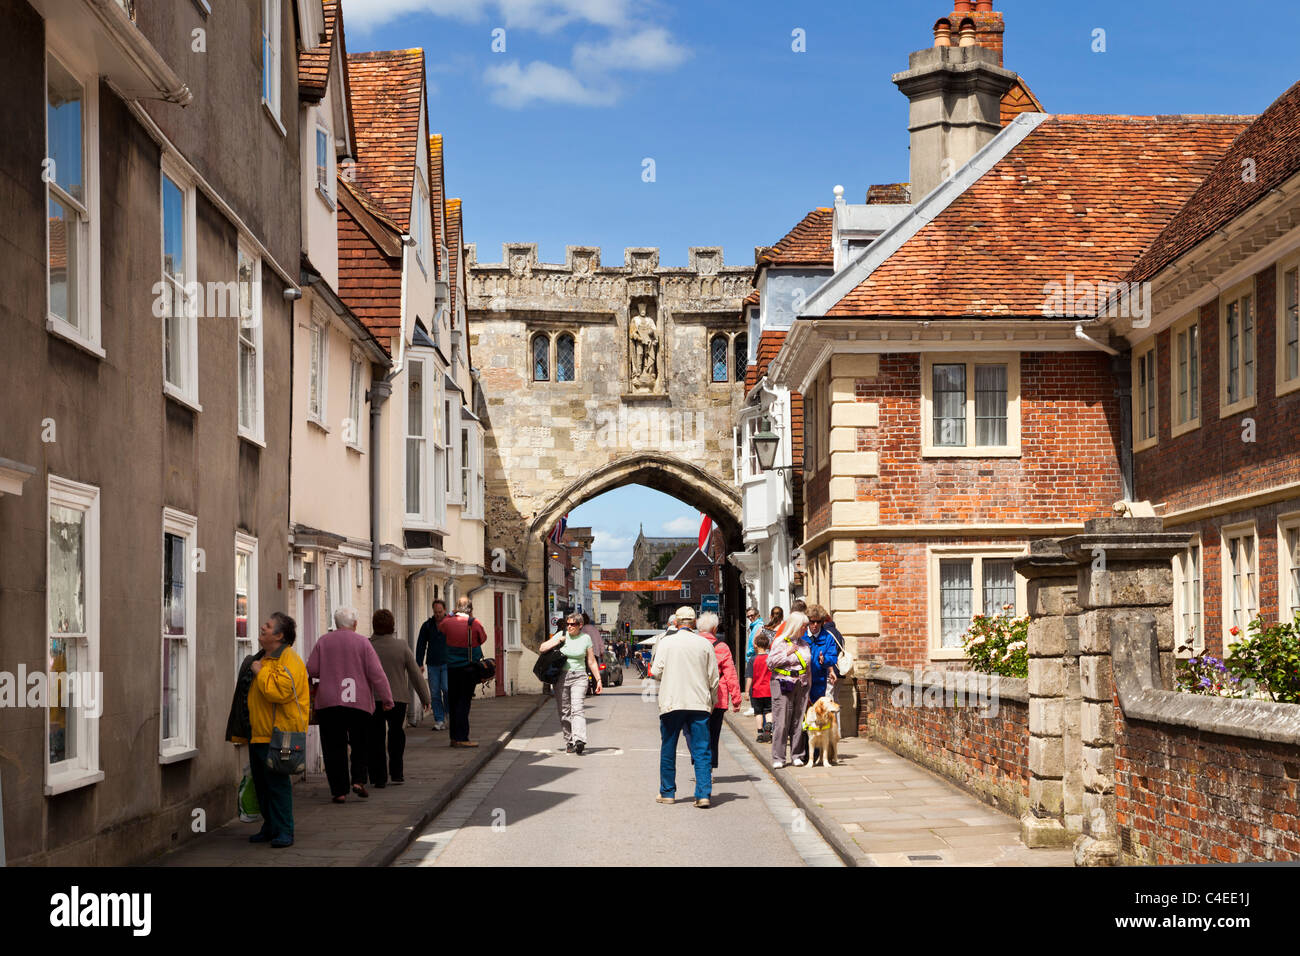 La cathédrale de Salisbury, Wiltshire - Fermer la porte et de la rue High Street, Salisbury, Wiltshire, Angleterre, Royaume-Uni Banque D'Images